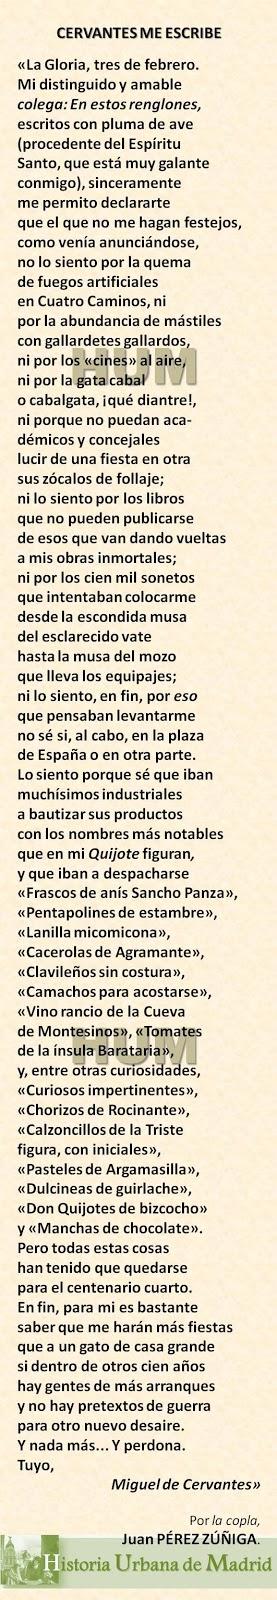 Madrid, cien años atrás. Carta de Cervantes a Pérez Zúñiga.